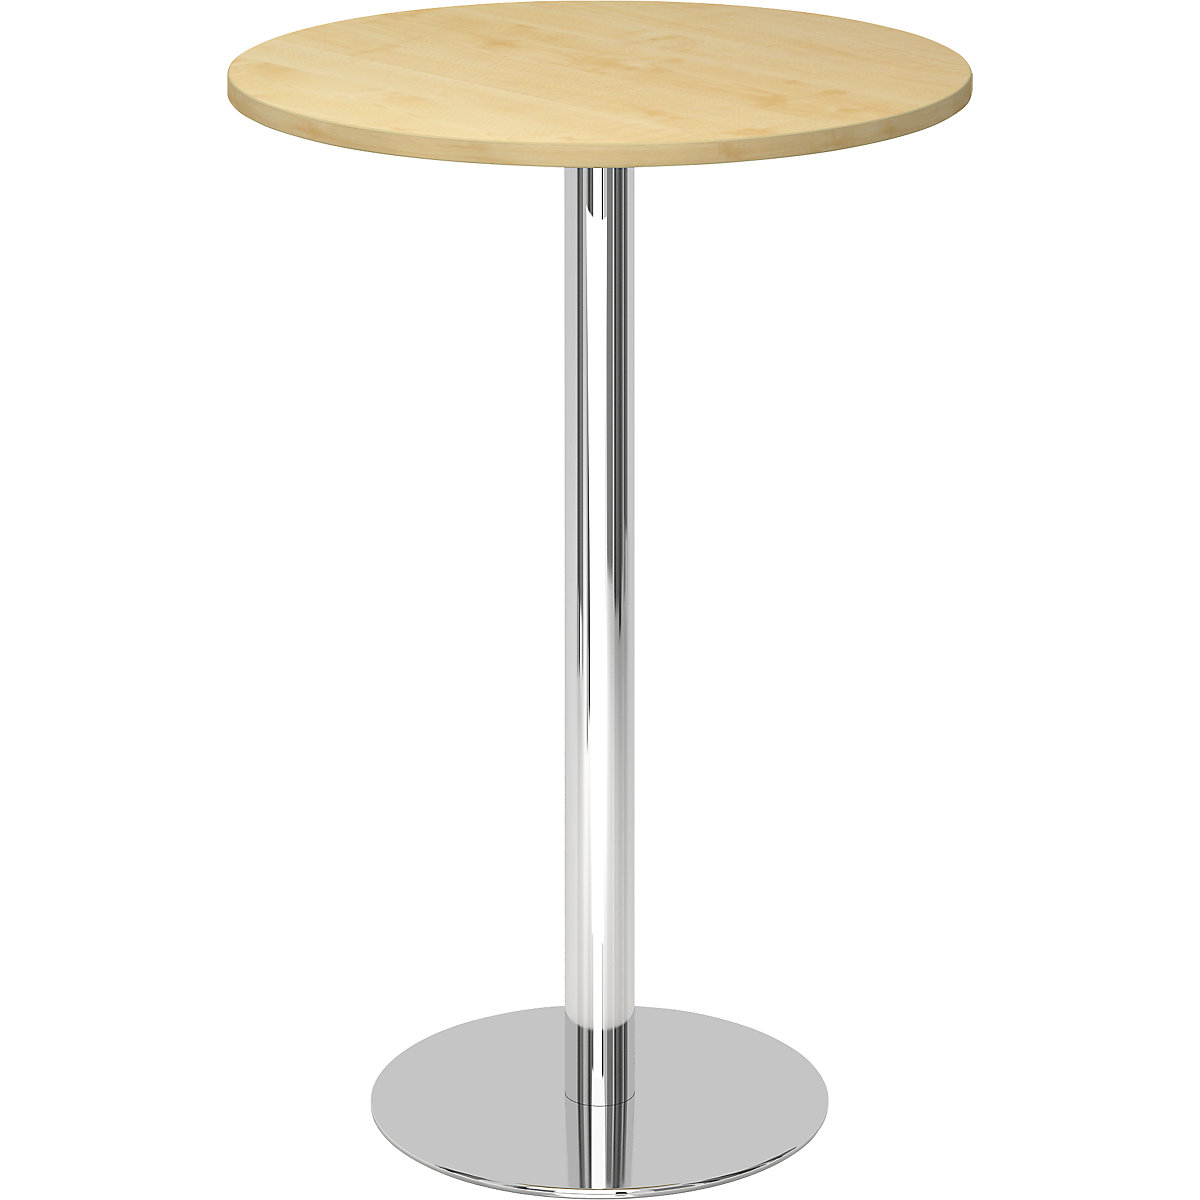 Állóasztal, Ø 800 mm, 1116 mm magas, krómozott váz, juhar-dekor asztallap